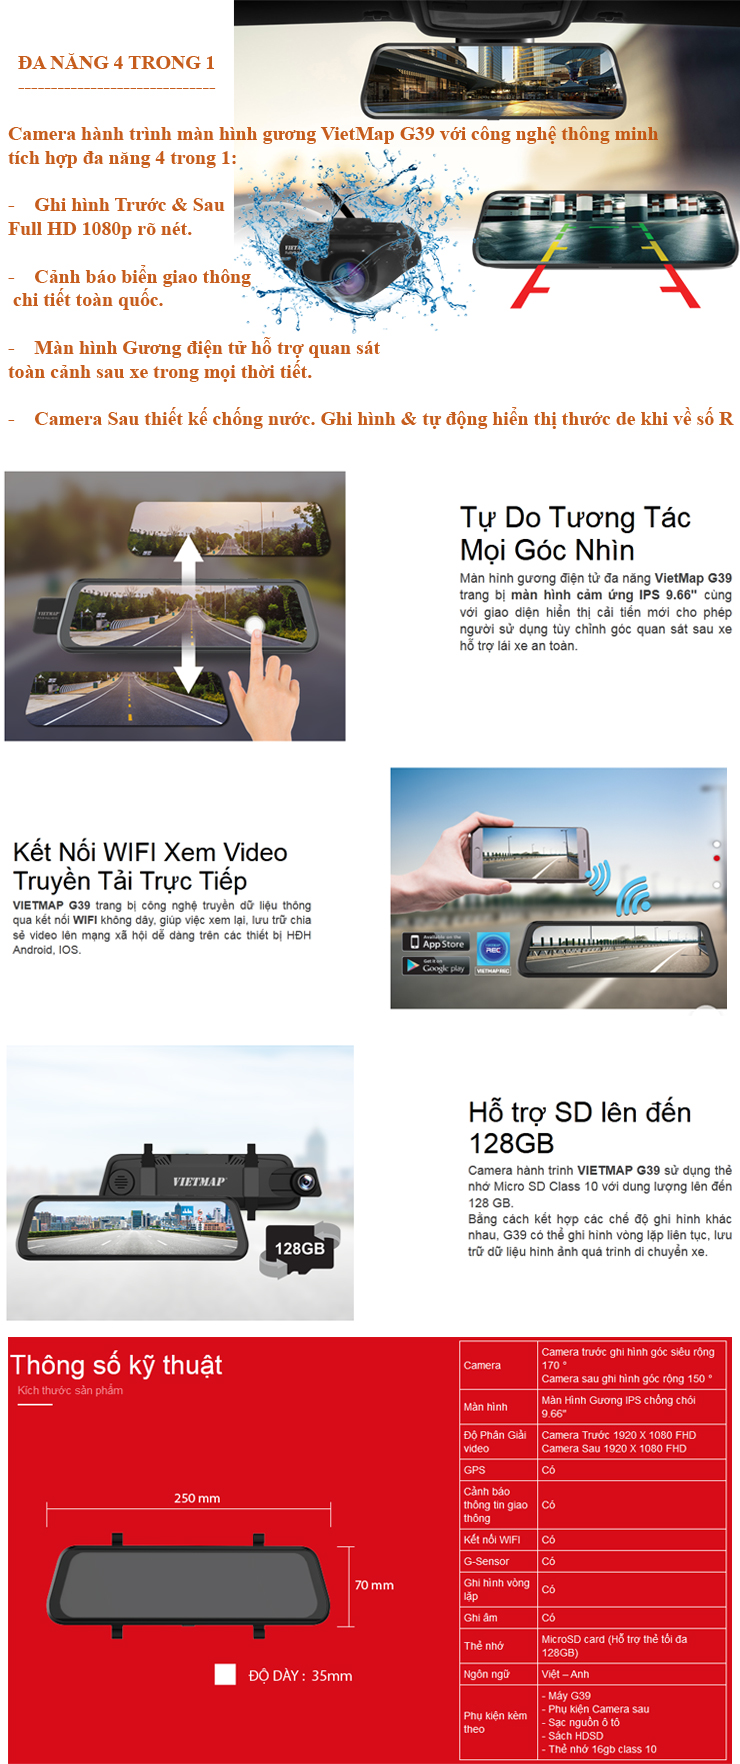 Ngoài ra Camera VietMap G39 còn trang bị một số tính năng cơ bản như: